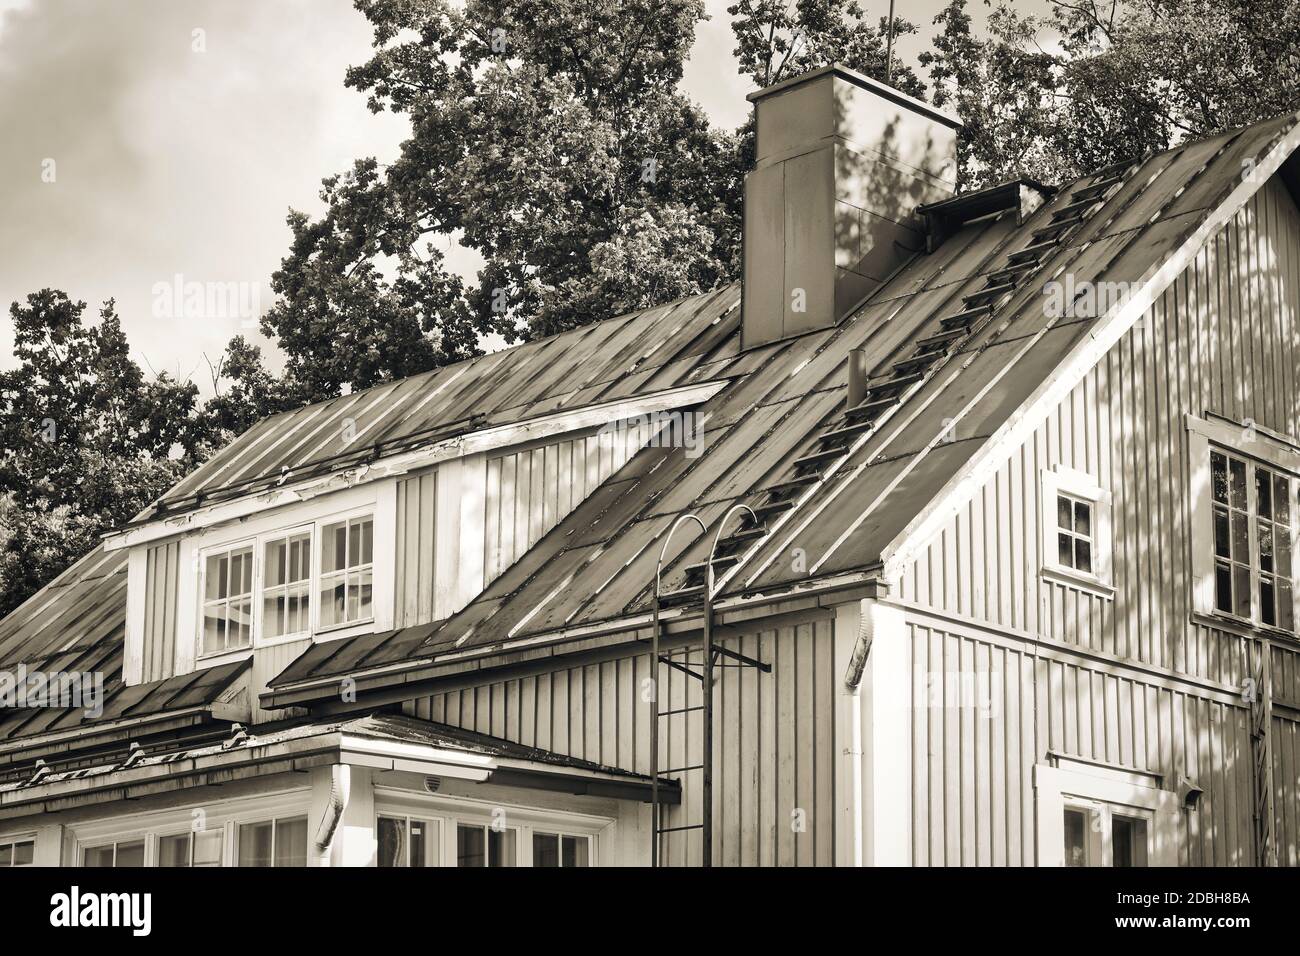 Ancienne construction en bois avec échelle menant au toit, conversion monochrome. Banque D'Images